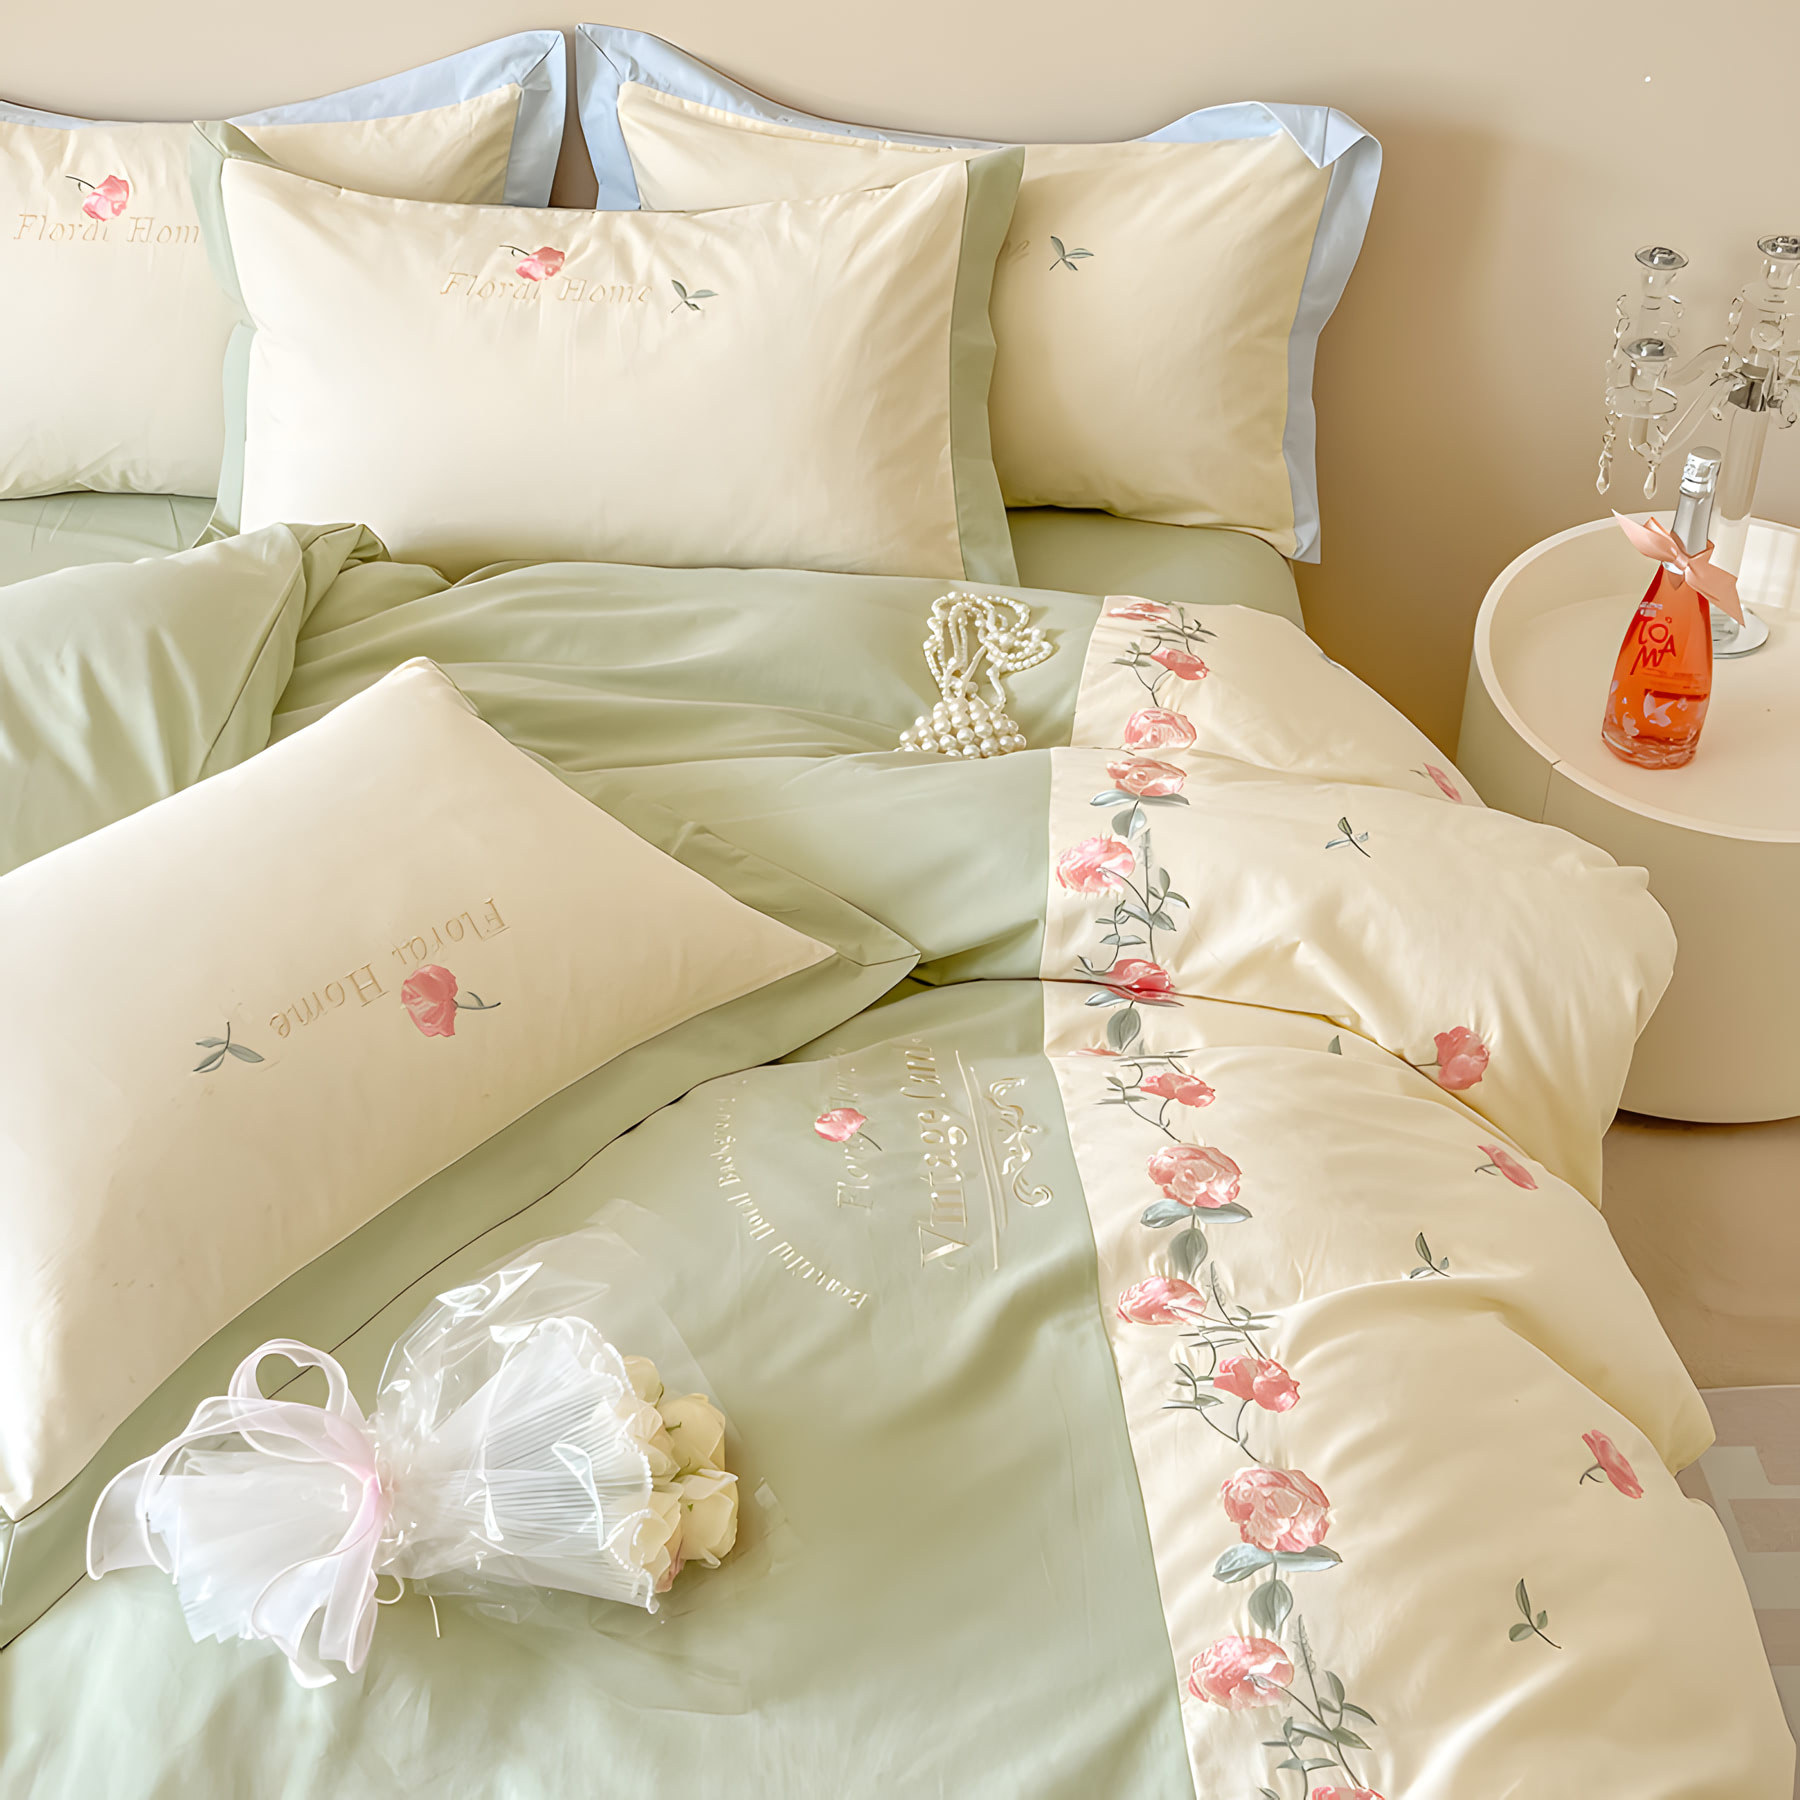 Vintage Floral Soft Brushed Cotton Embroidery Bedsheets Set02